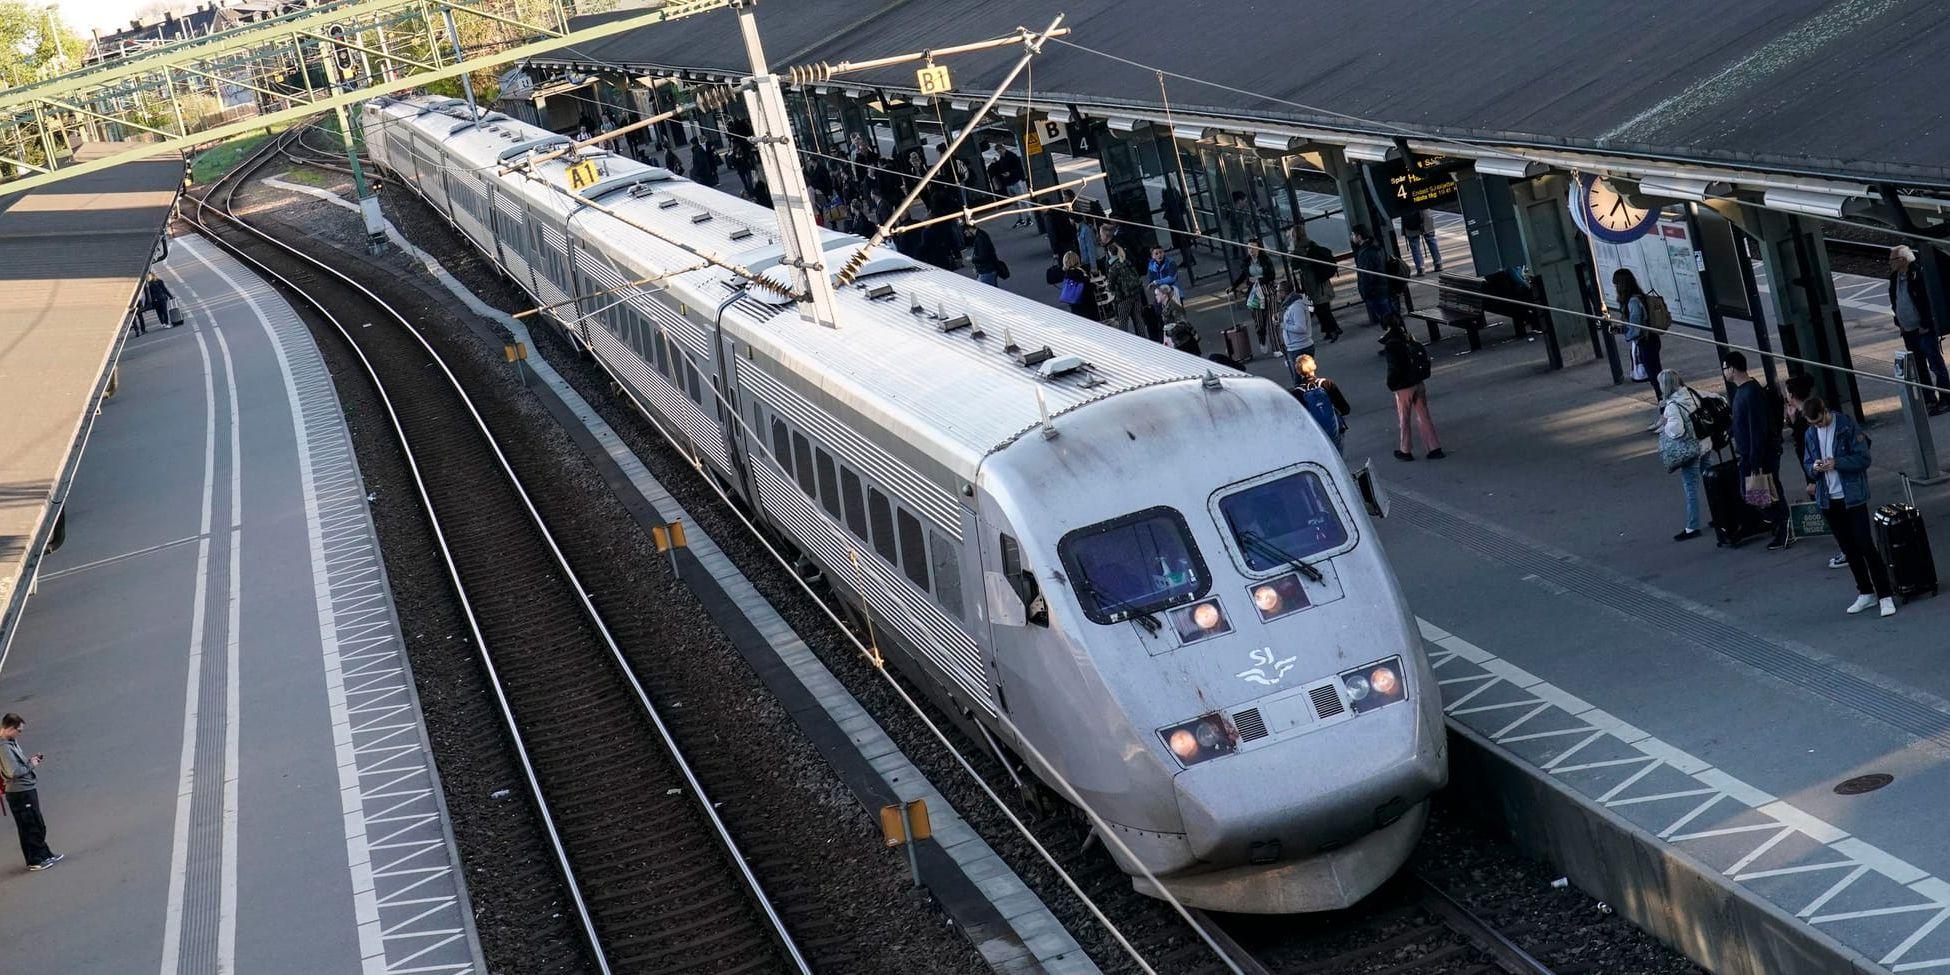 Trängsel på landets tågspår gör att många tåg kör långsammare i dag jämfört med 2003, rapporterar Helsingborgs Dagblad och Sydsvenskan. Arkivbild.